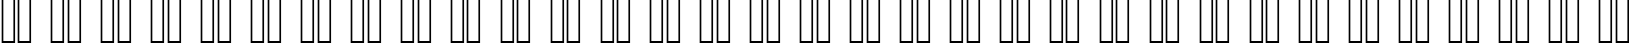 Пример написания русского алфавита шрифтом Bauhaus 93